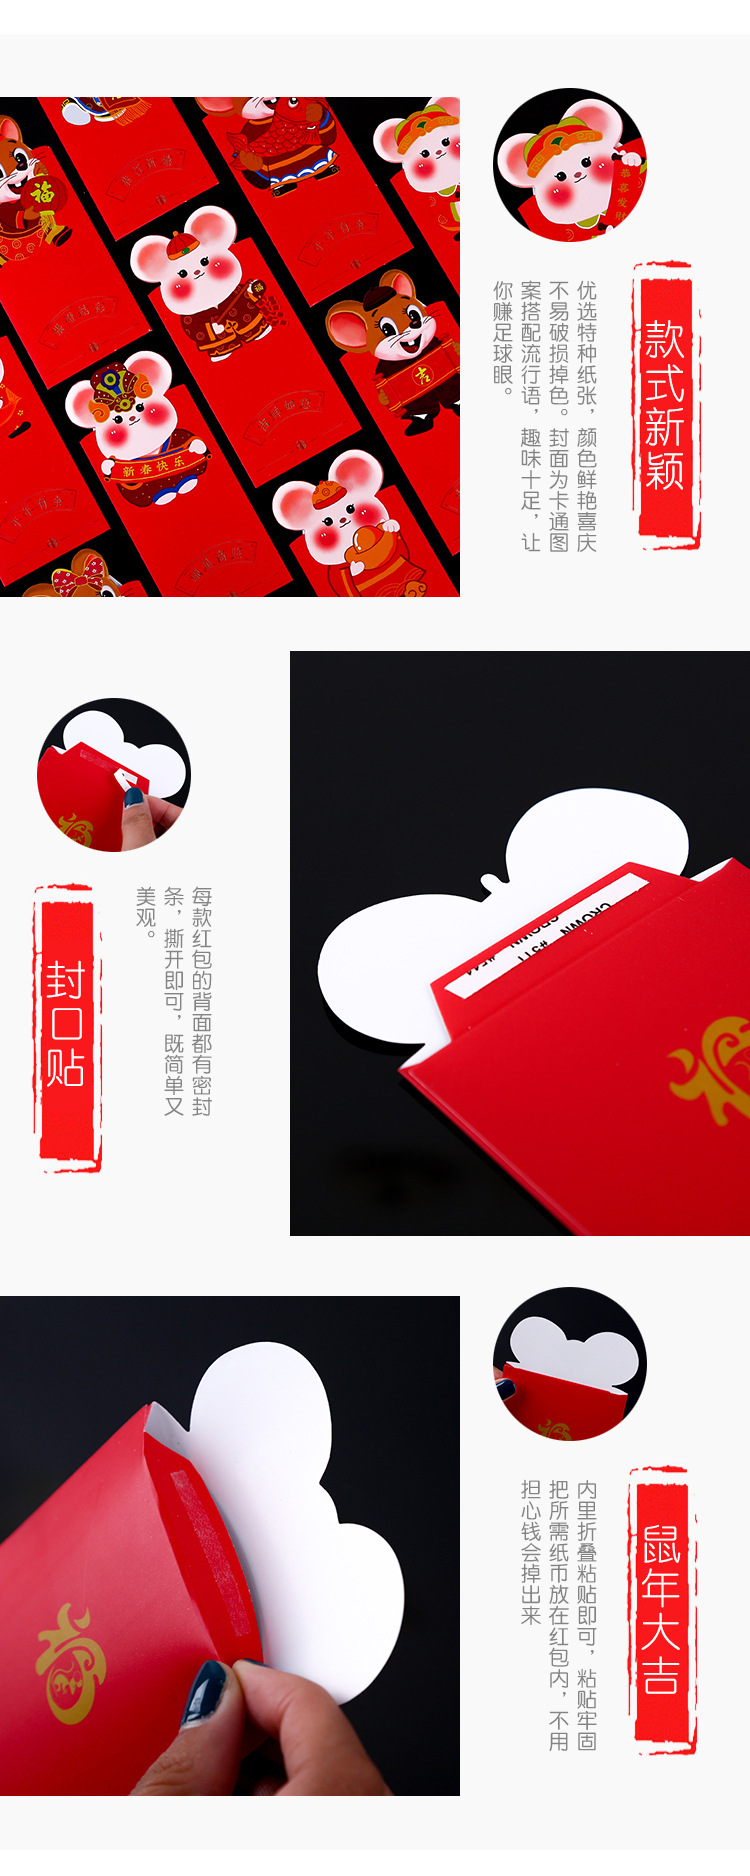 可愛老鼠拜年紅包袋 創意鼠年紅包袋 封口設計老鼠造型紅包袋 6個裝2